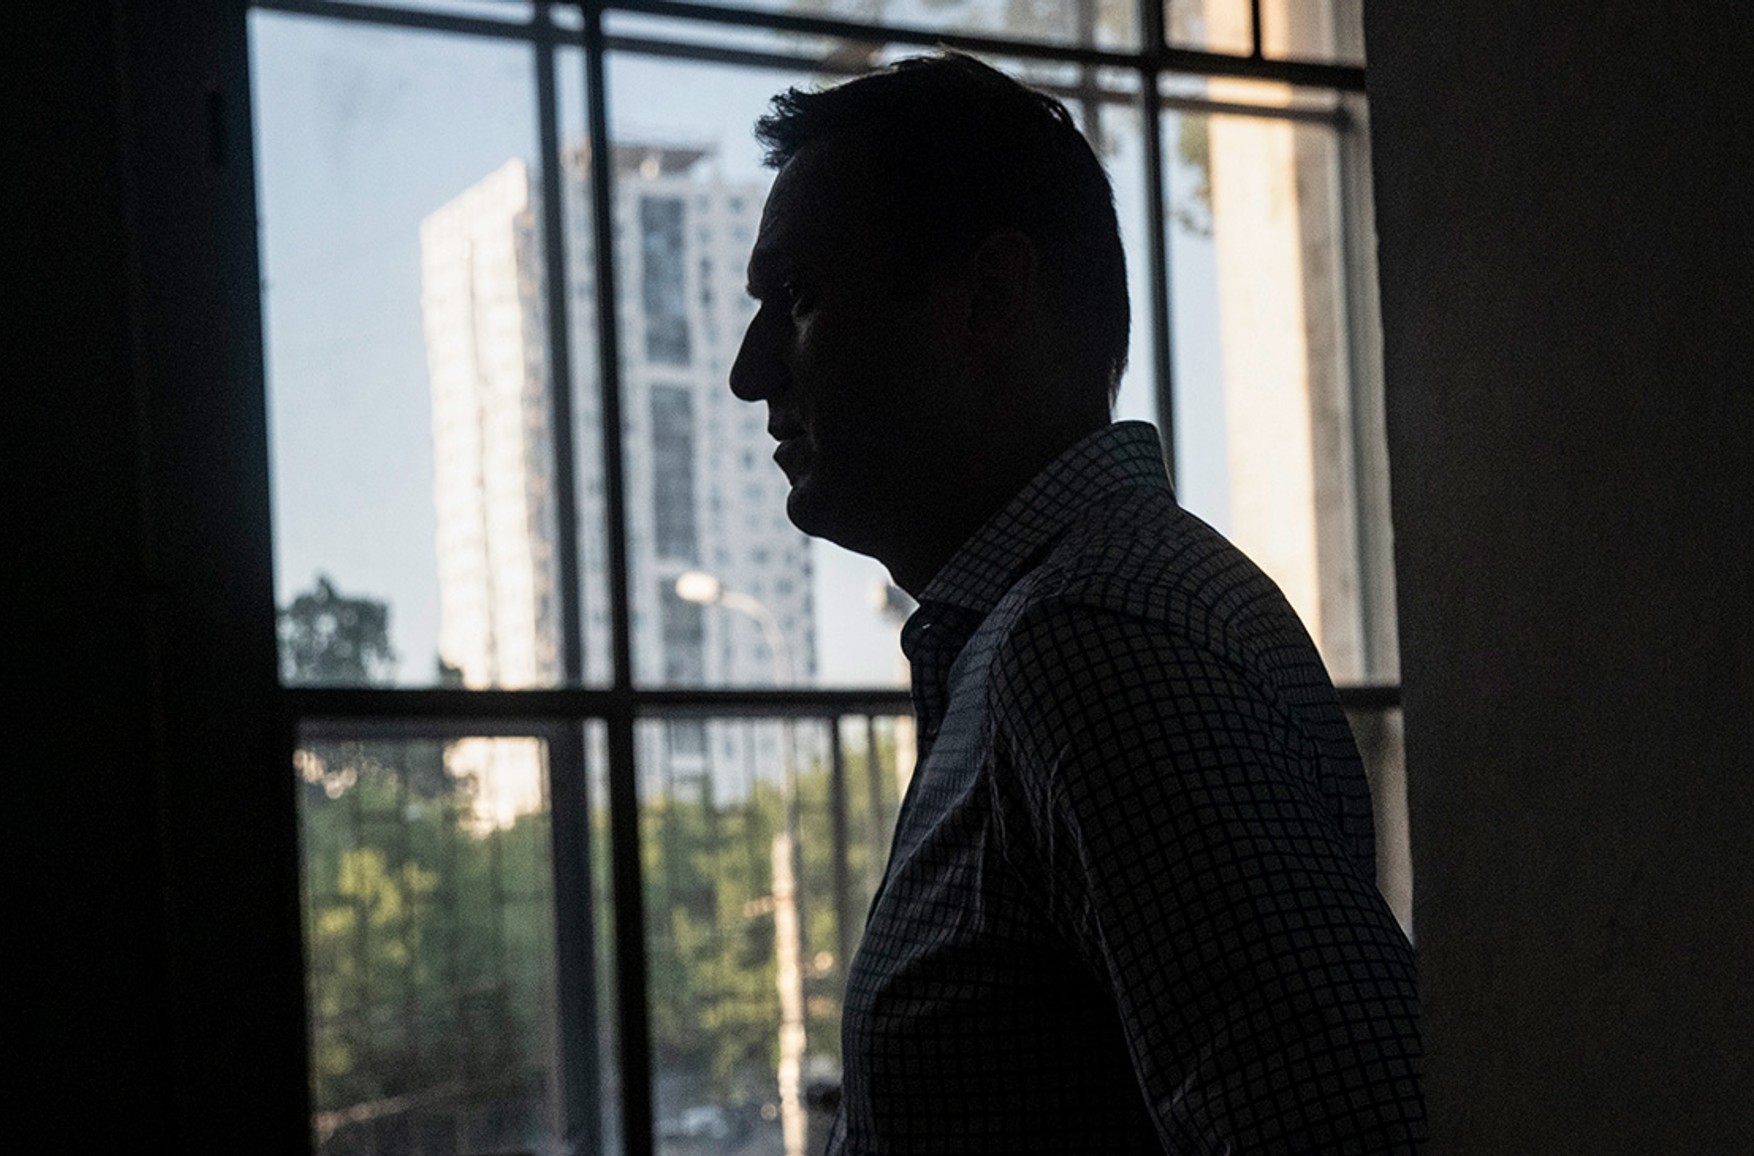 ОЗХЗ: в аналізах Олексія Навального виявлений «Новачок»